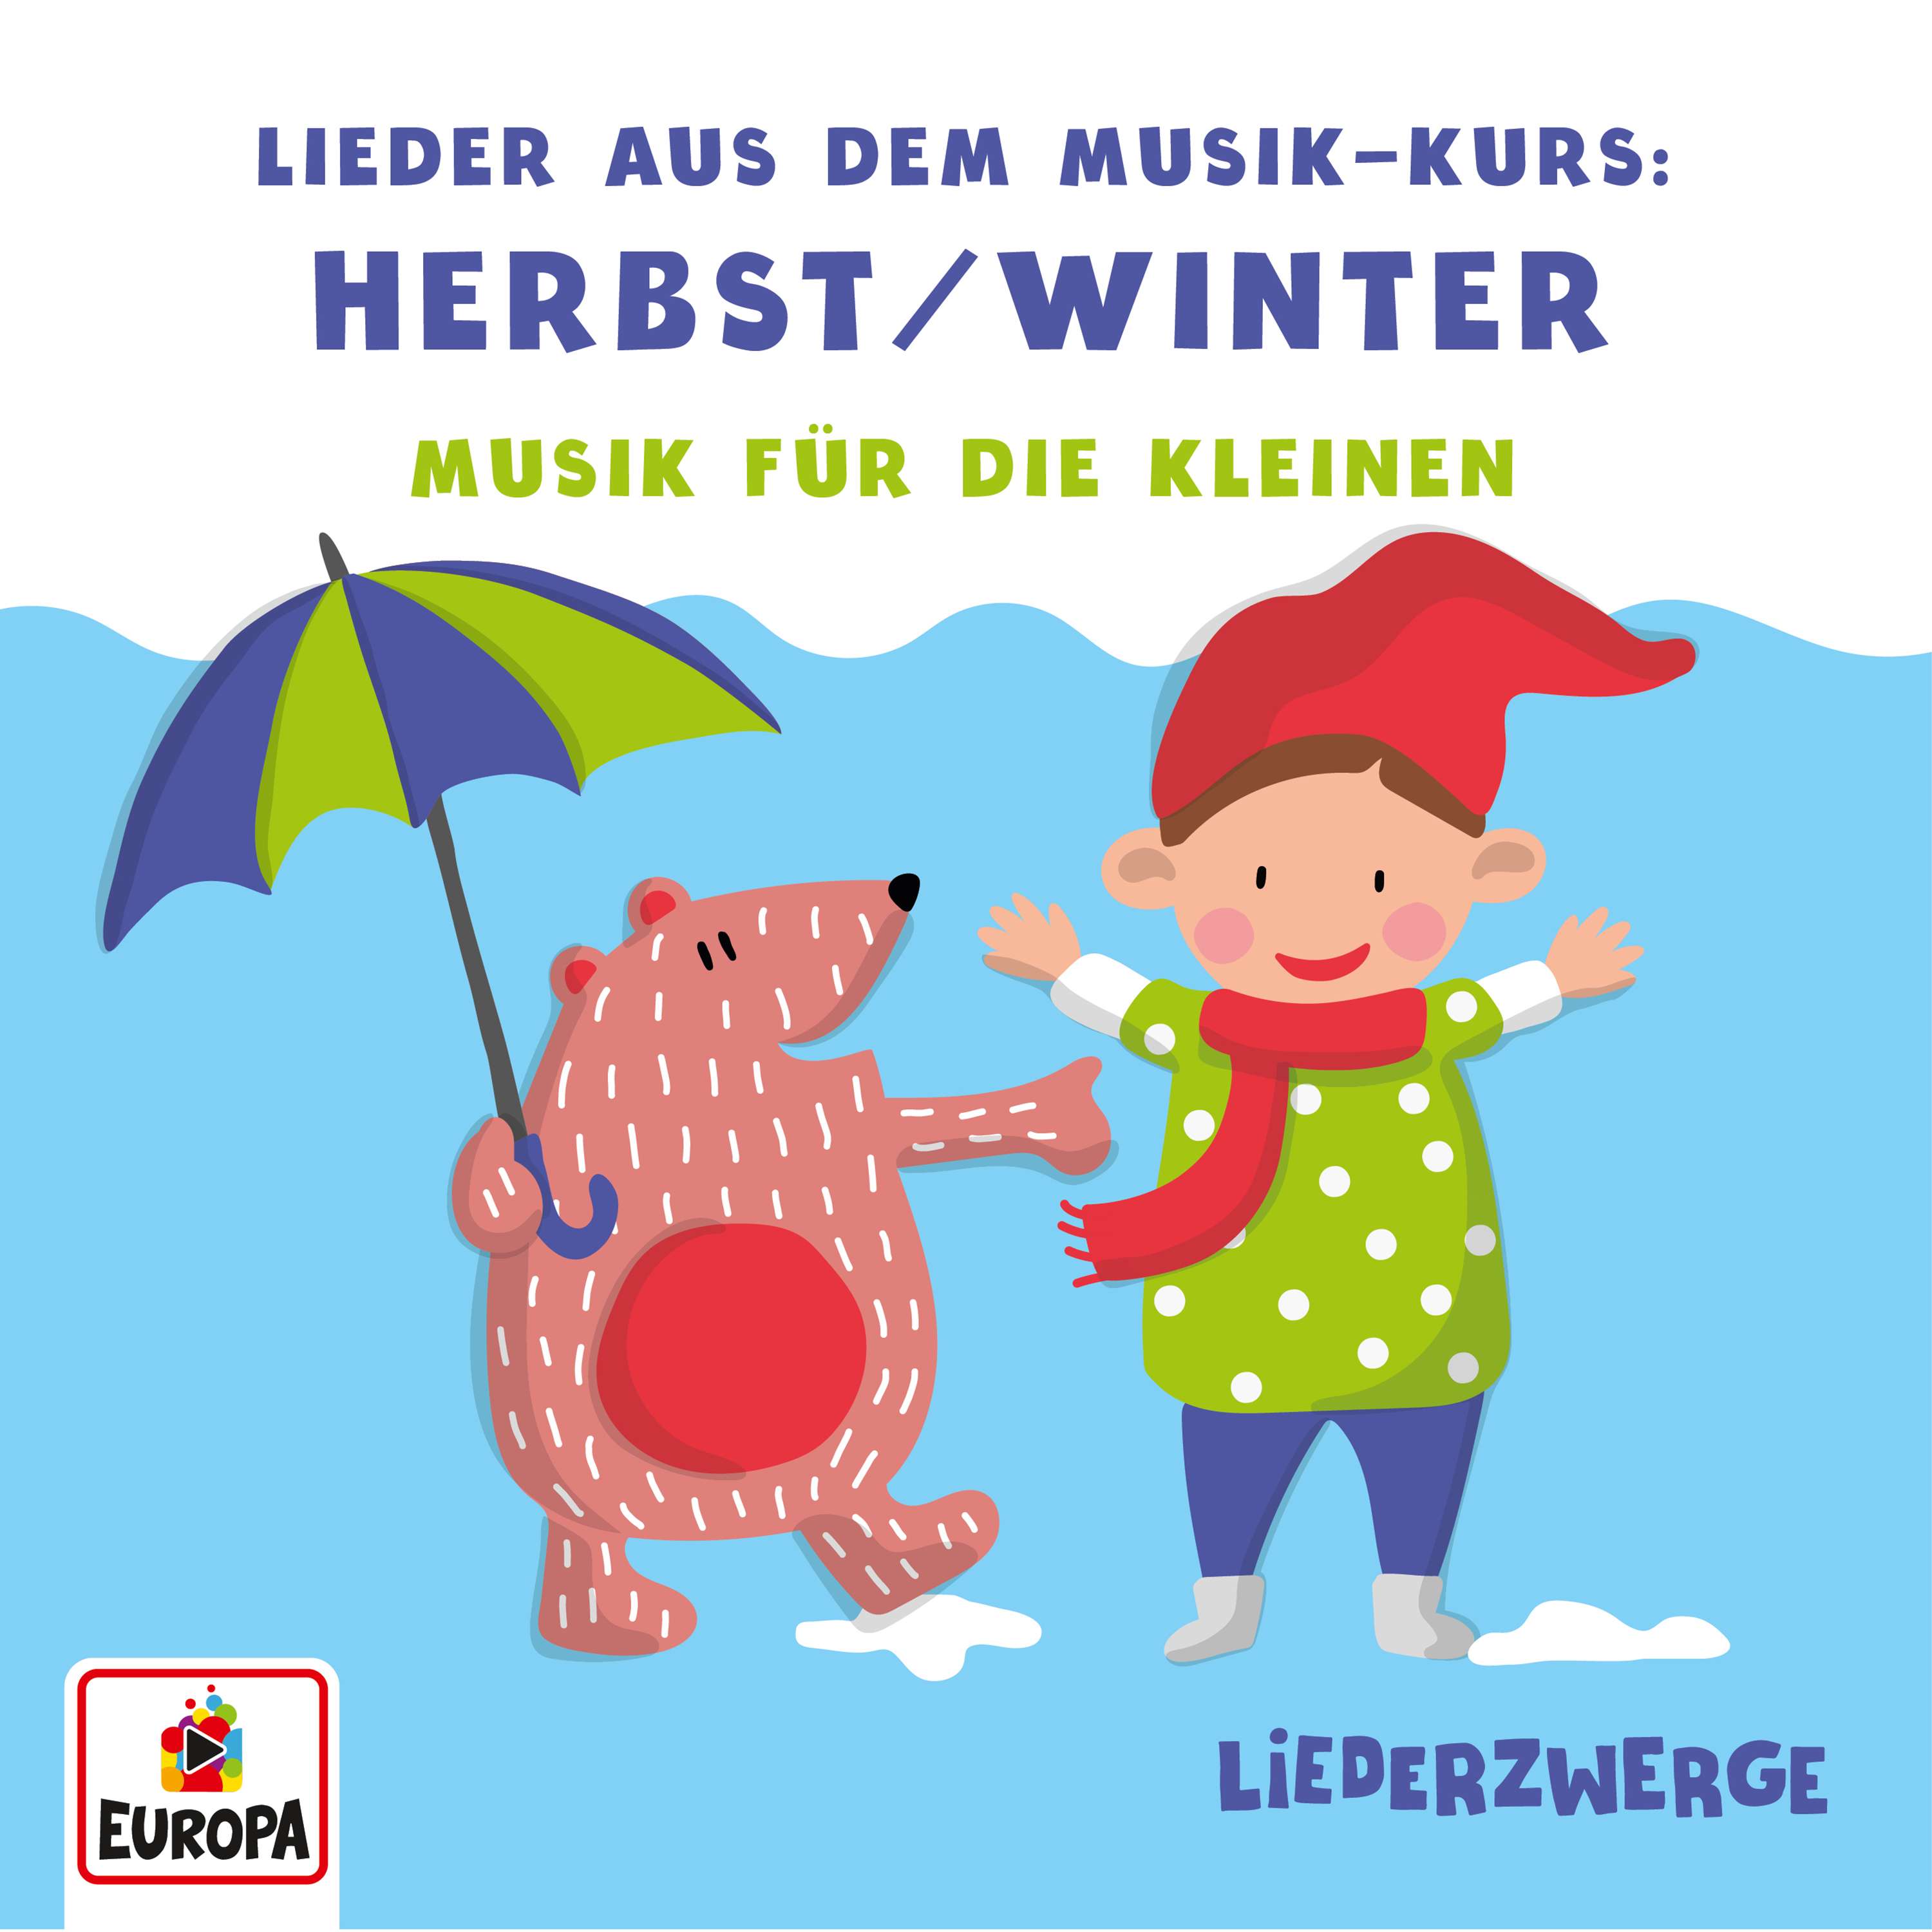 Lena, Felix & die Kita-Kids: Liederzwerge - Lieder aus dem Musik-Kurs, Vol. 1: Herbst/Winter